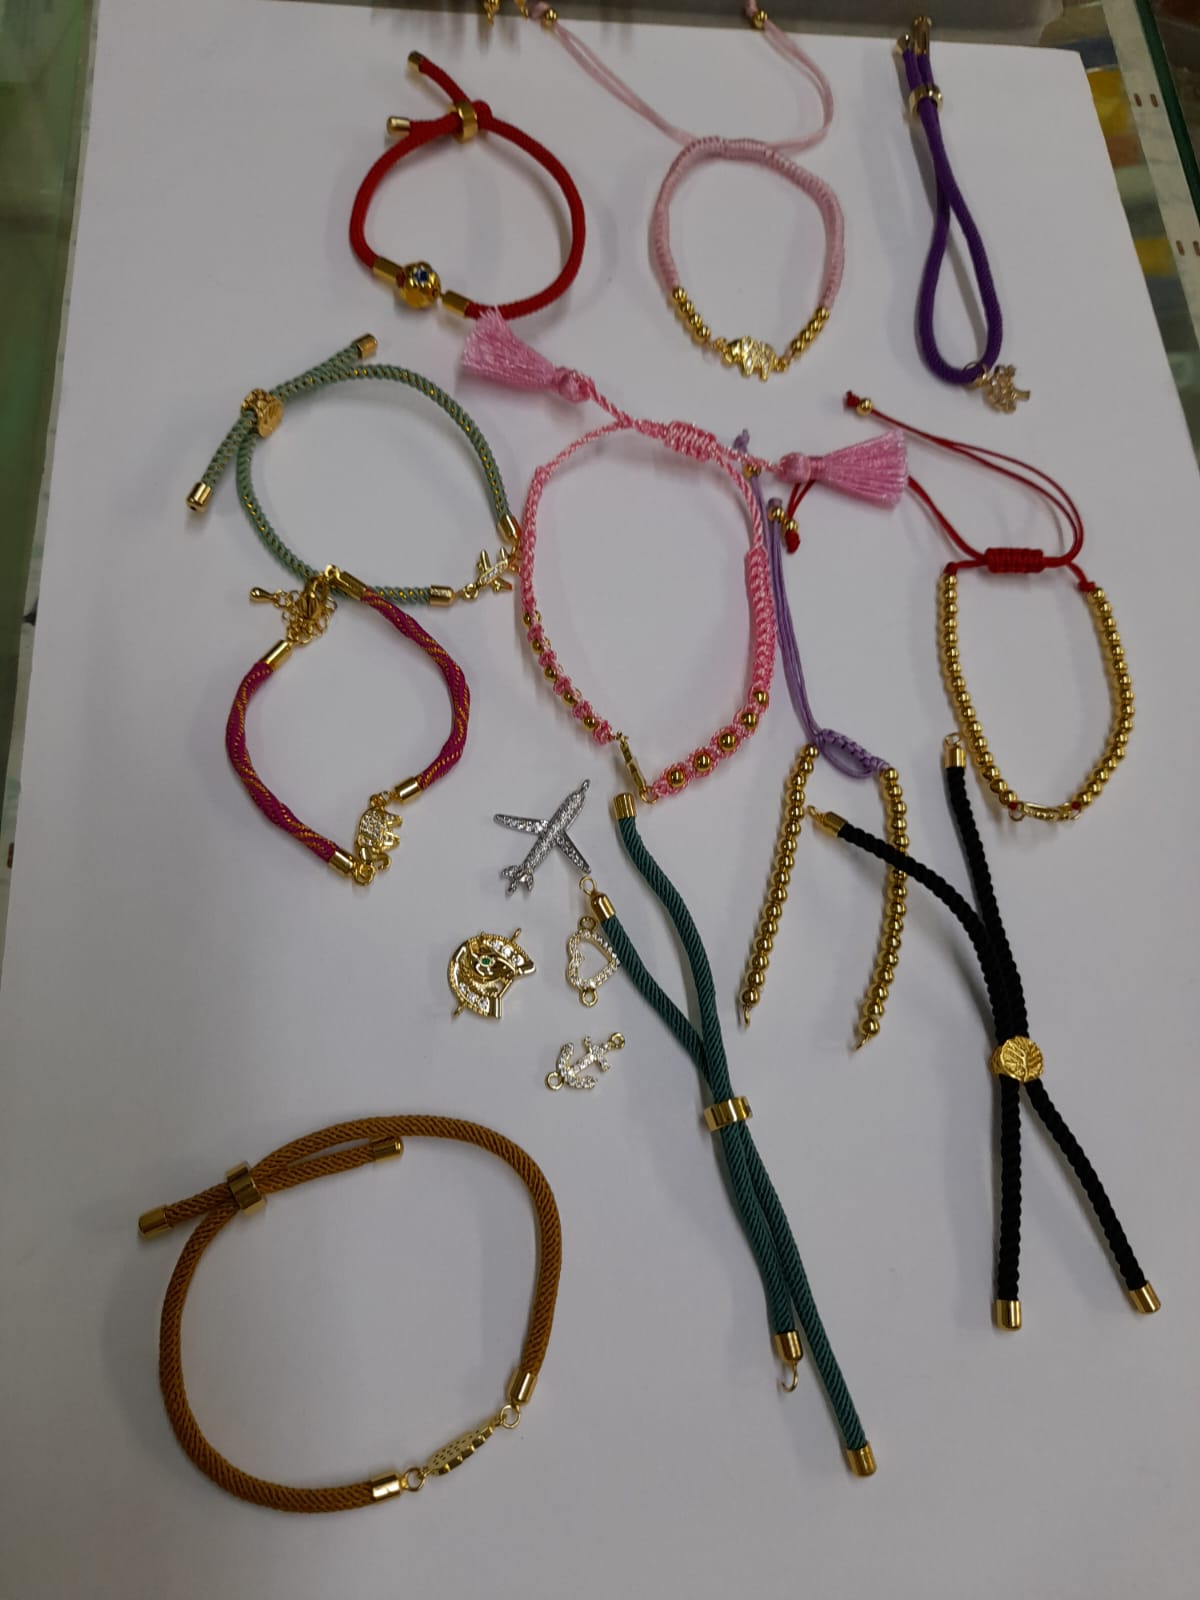 Kit completos con Abalorios para hacer bisuteria artesanal, pulseras,  anillos